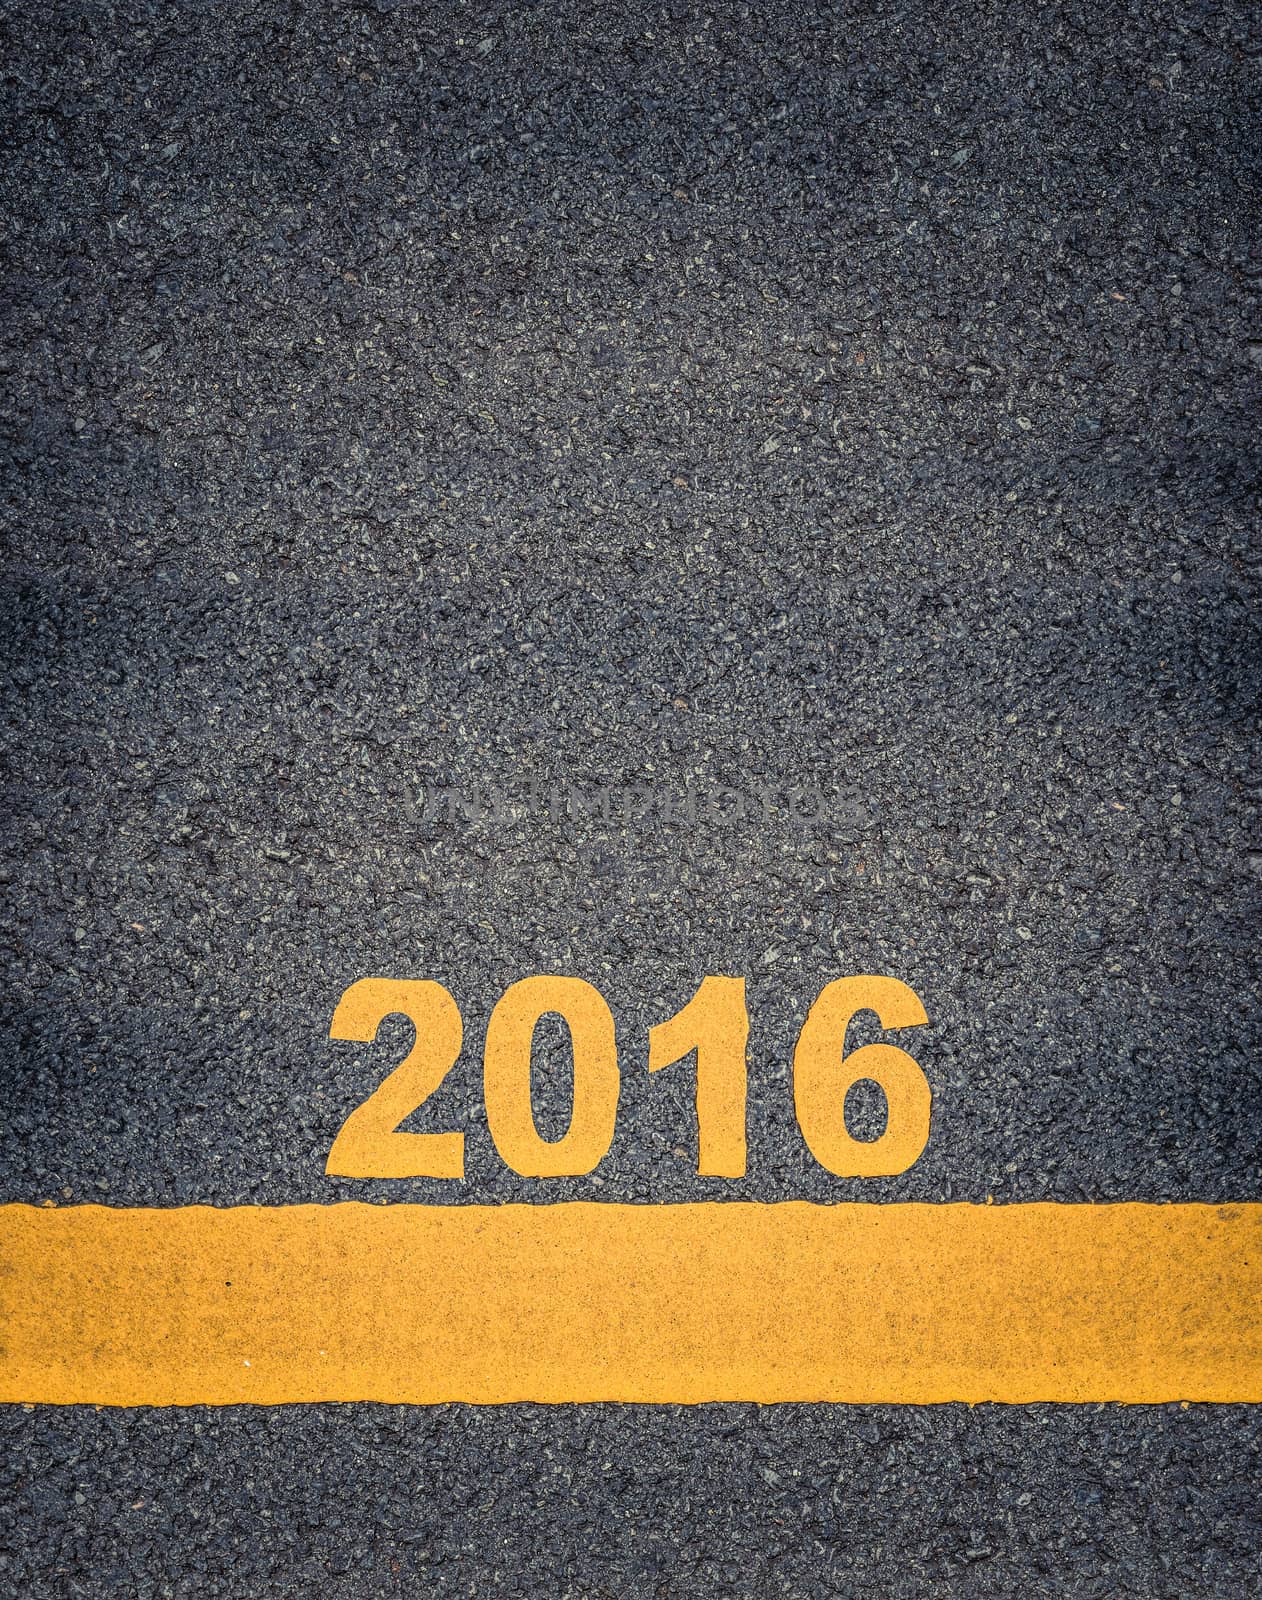 Asphalt Road Markings Showing 2016 by mrdoomits